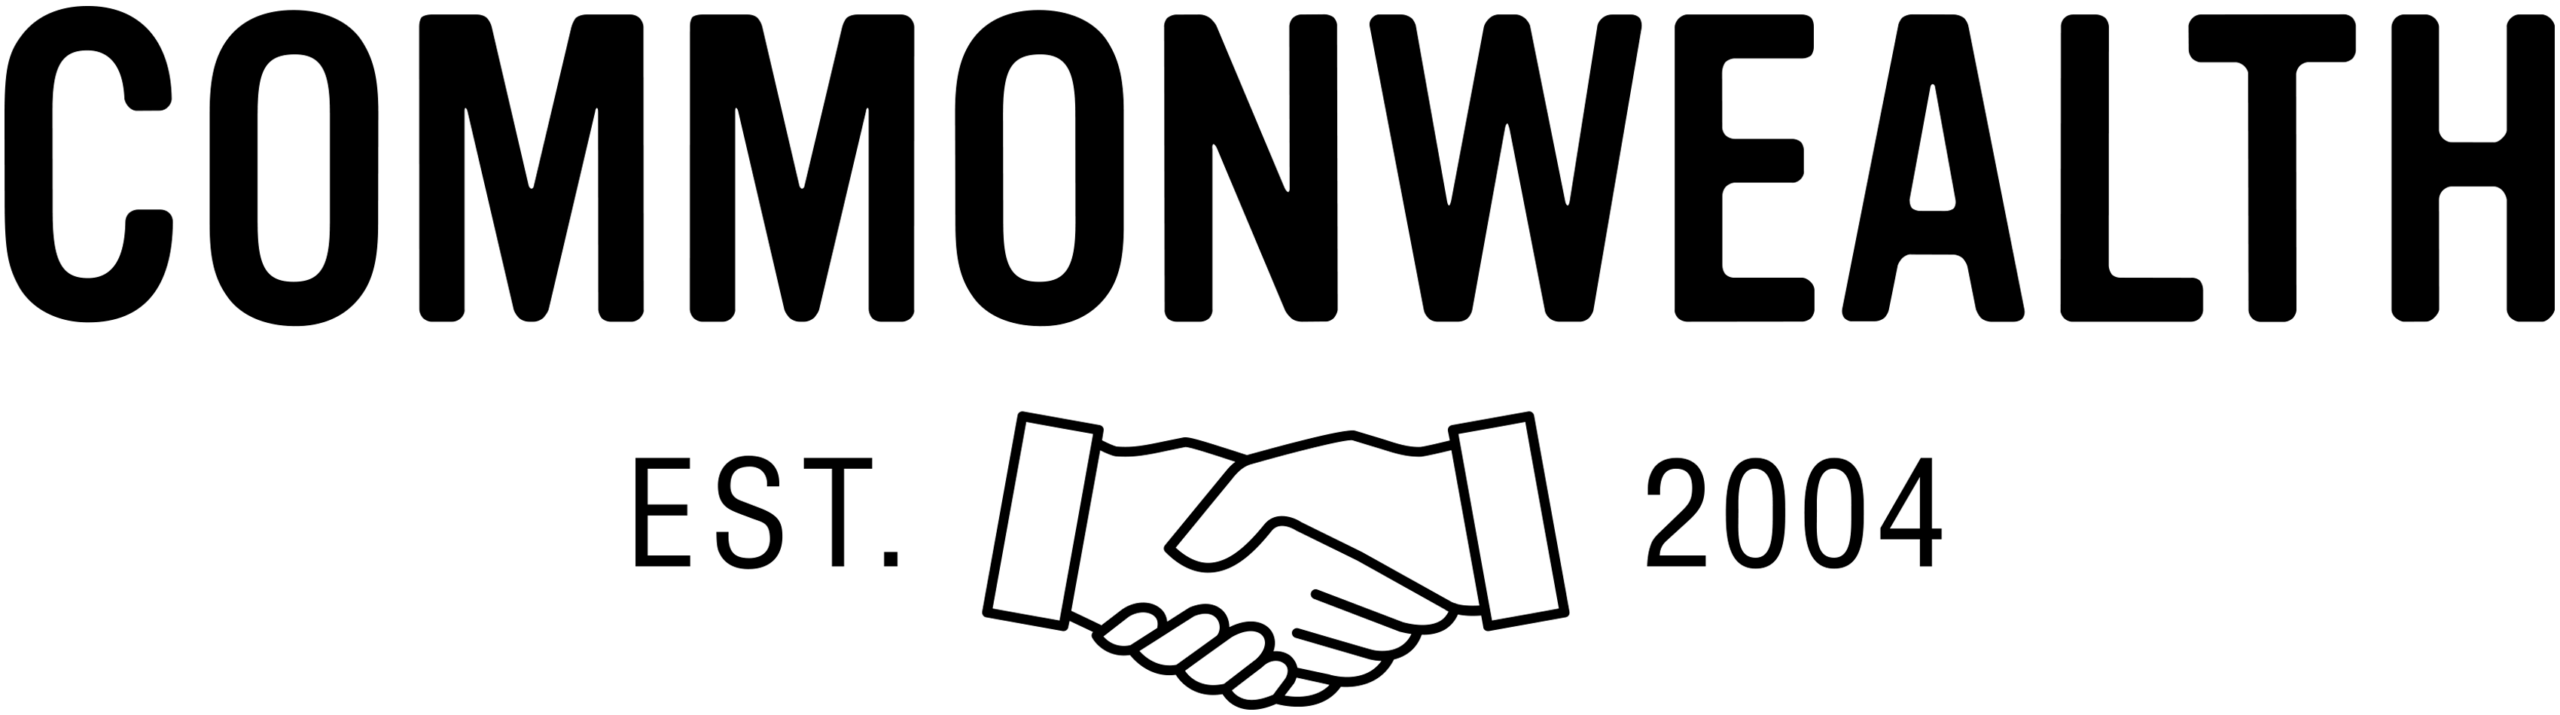 Логотип FTGG Співдружності